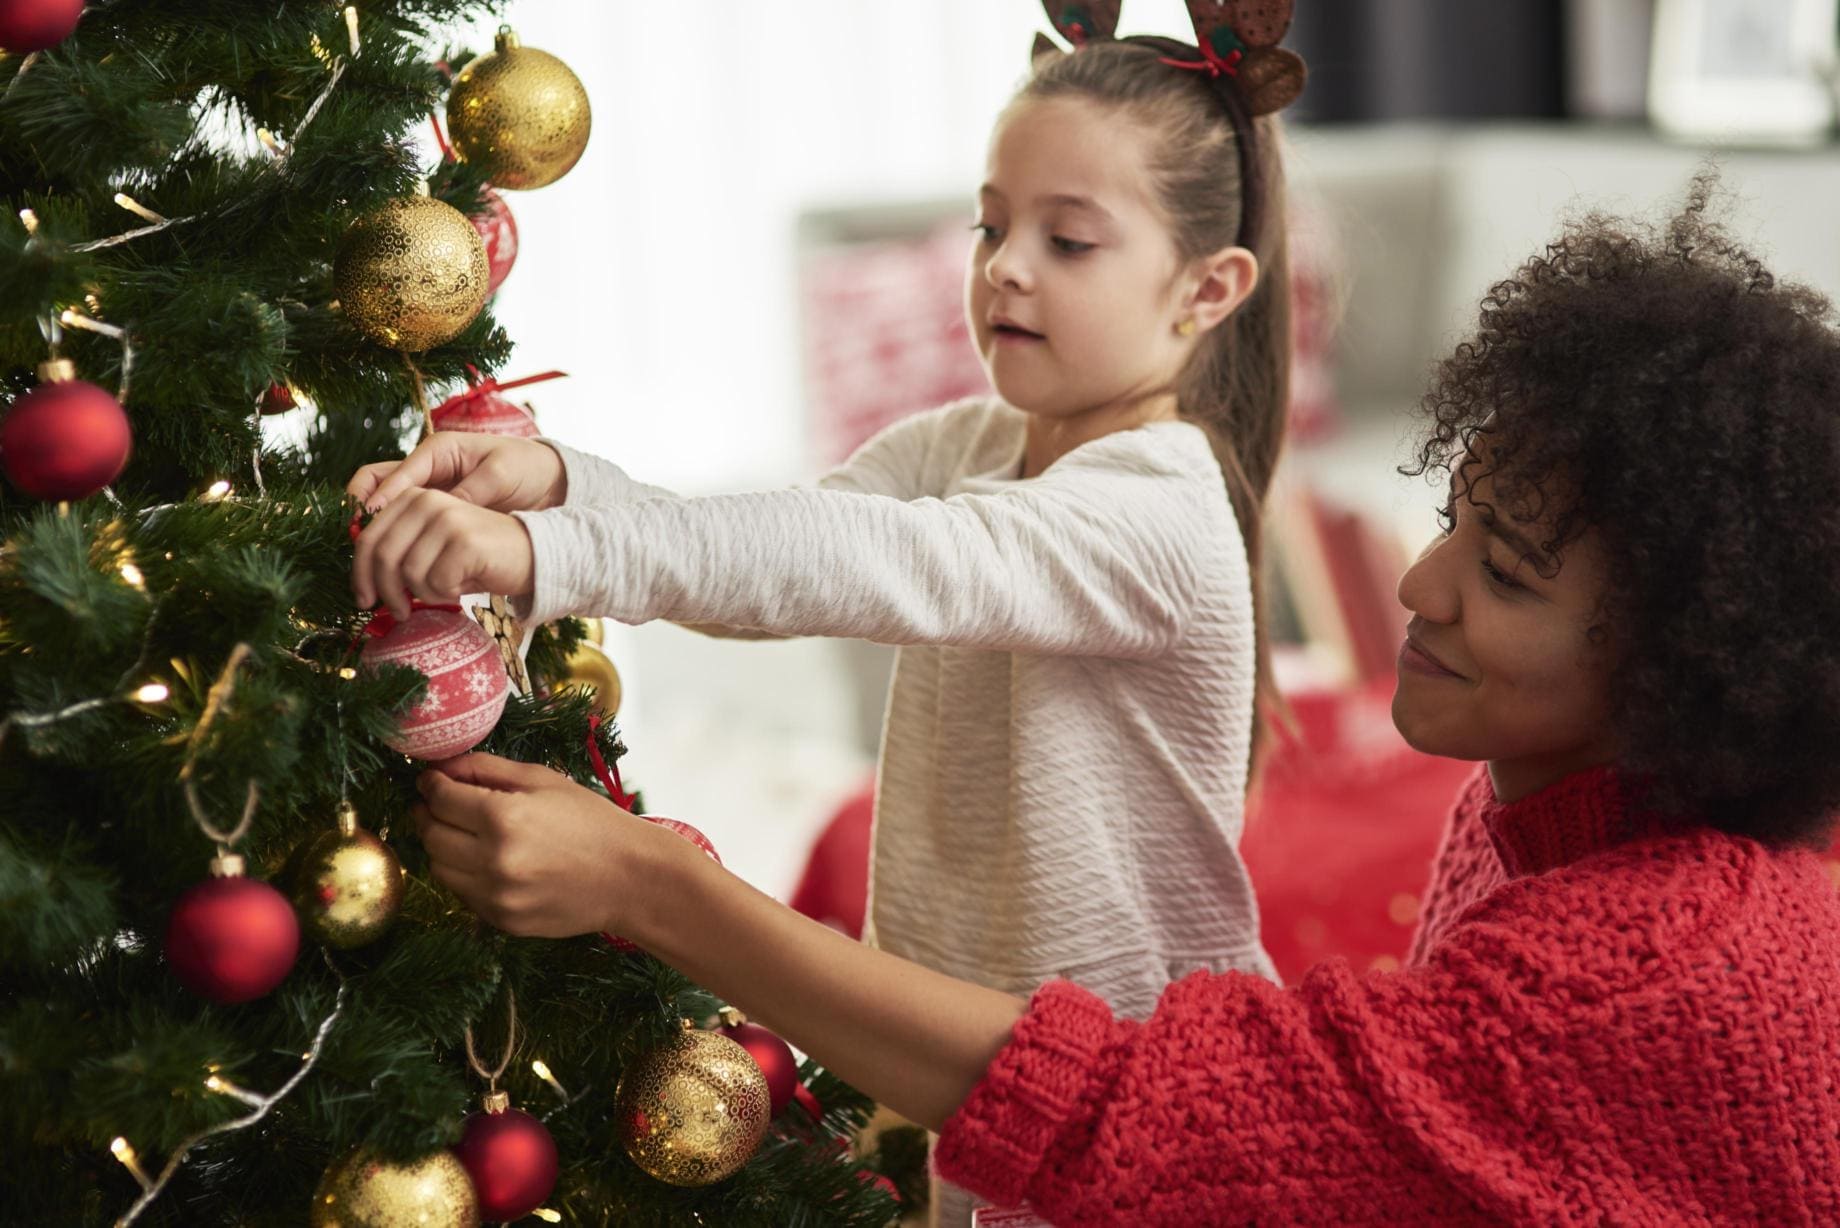 Weihnachtsbaum kindersicher gestalten: Tipps für ein sicheres Fest - Wohntrends Magazin